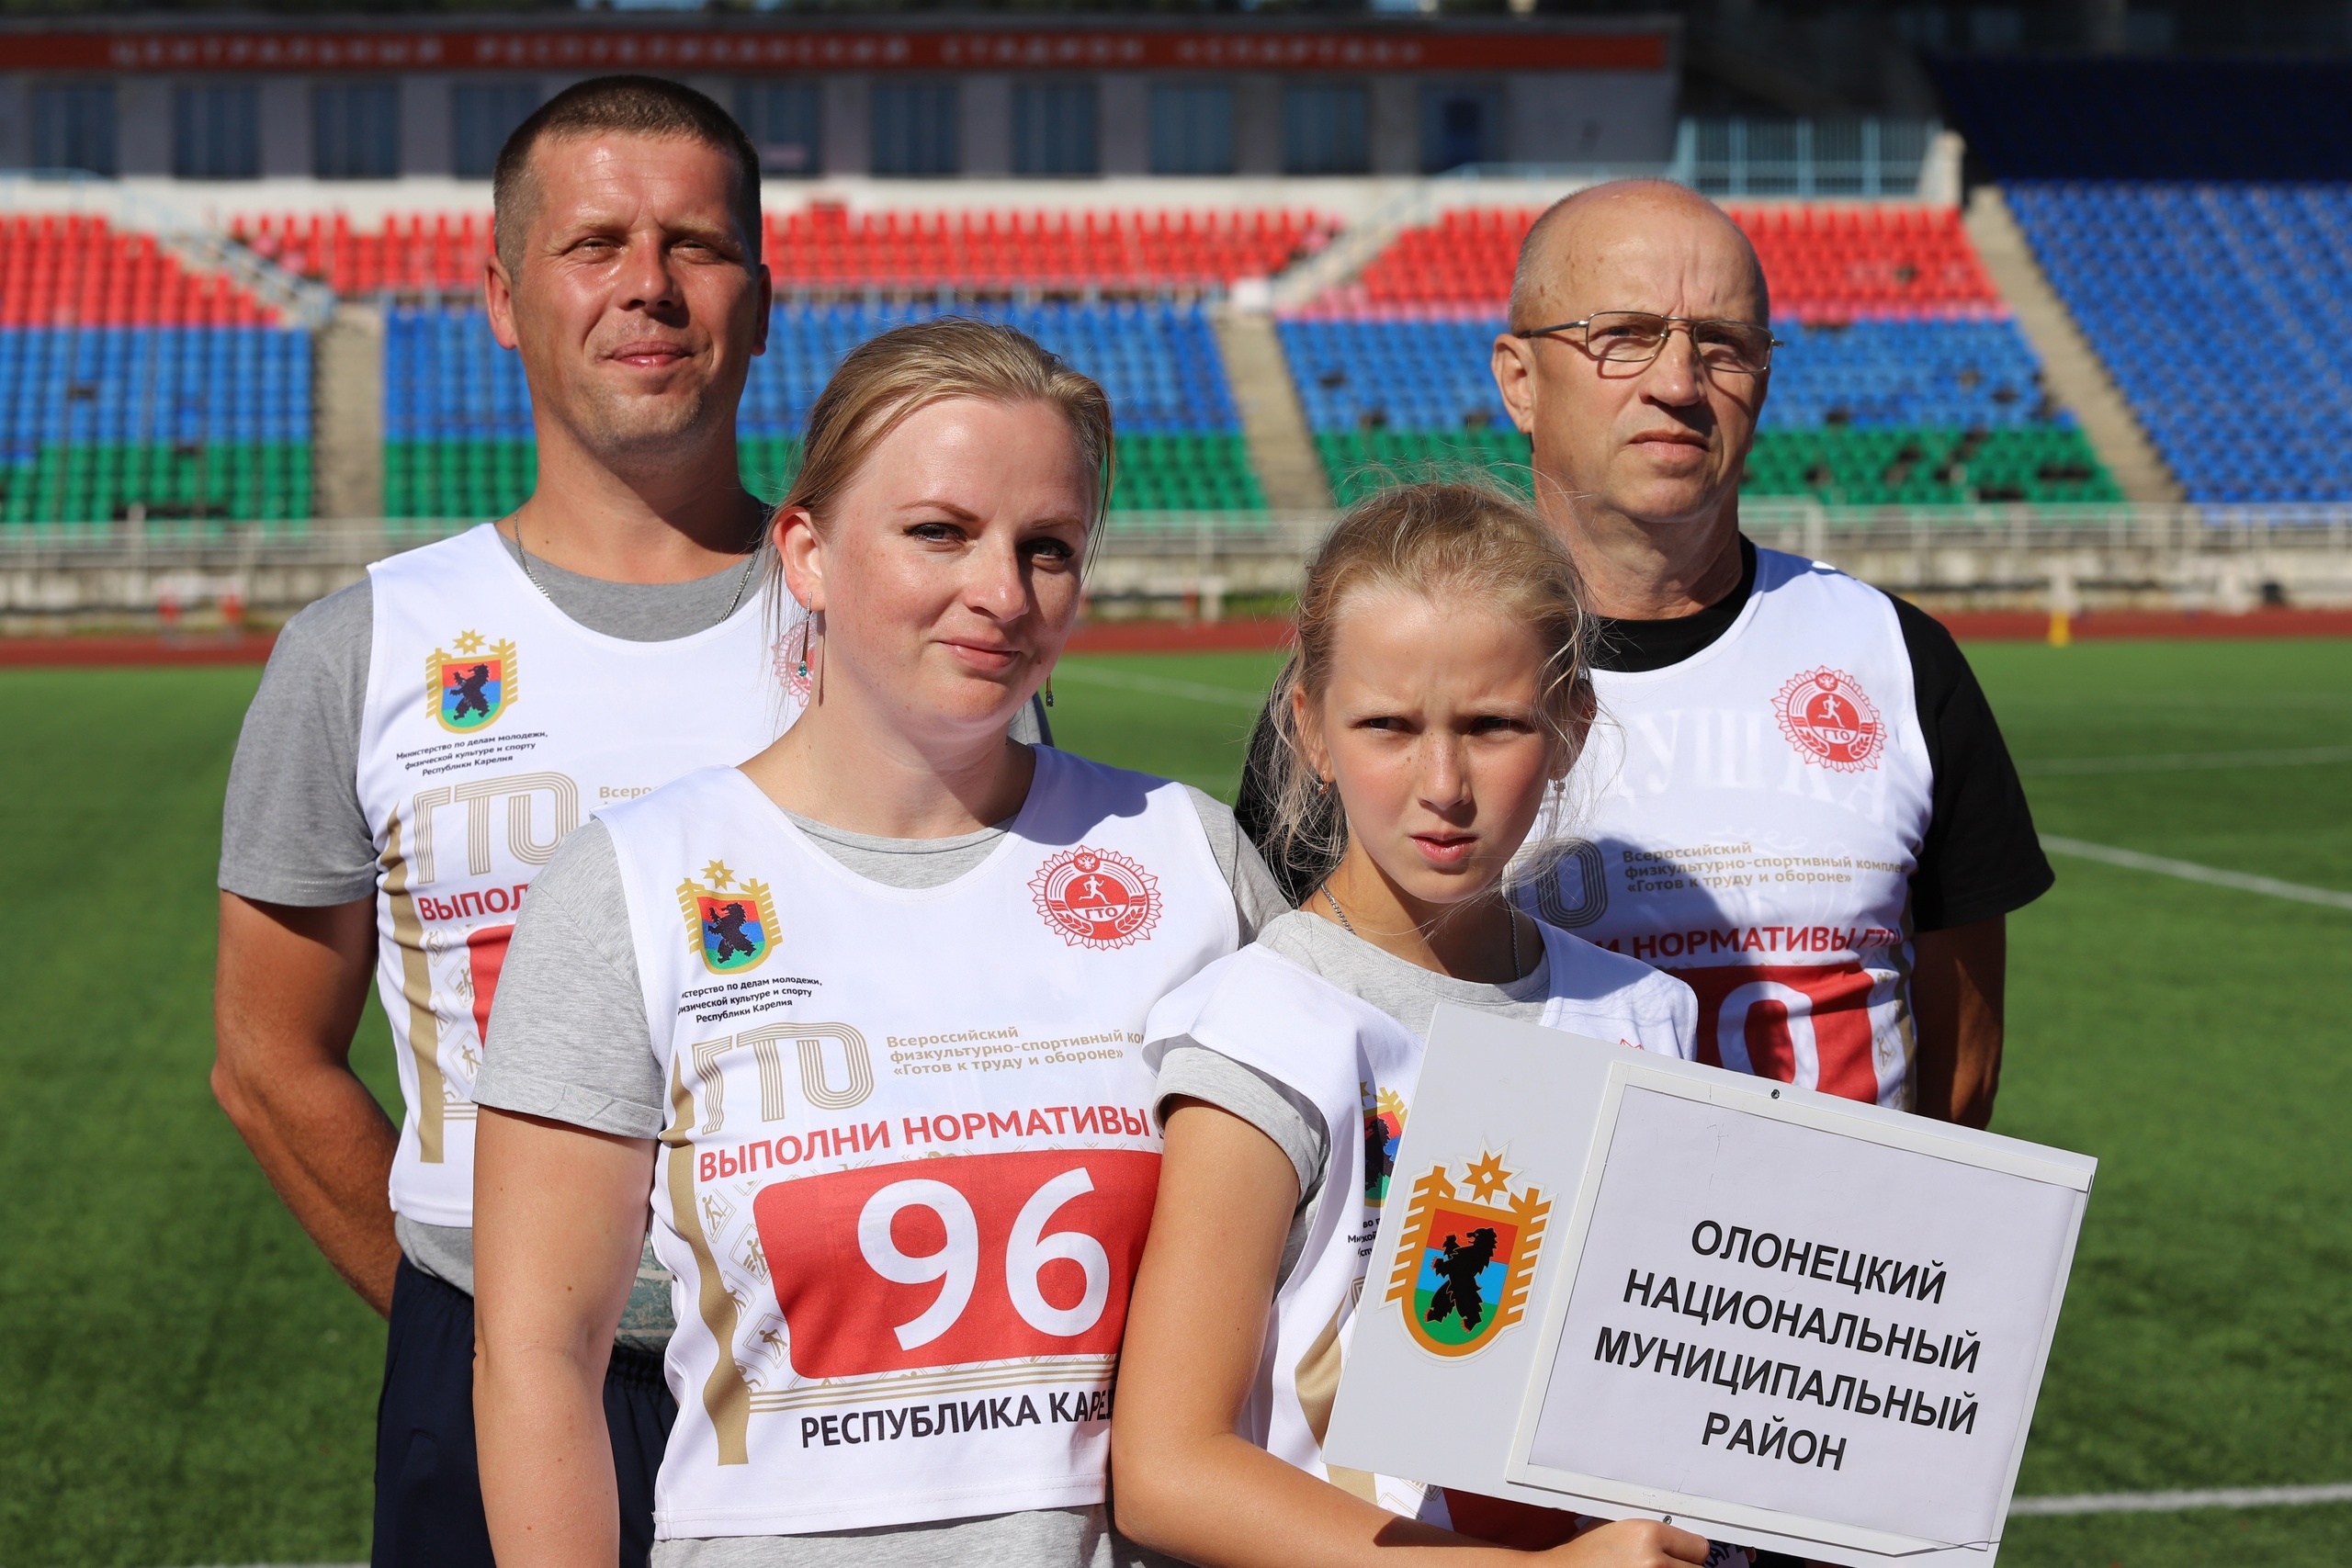 Семья из райцентра Карелии поборется за победу на Всероссийском фестивале ГТО 